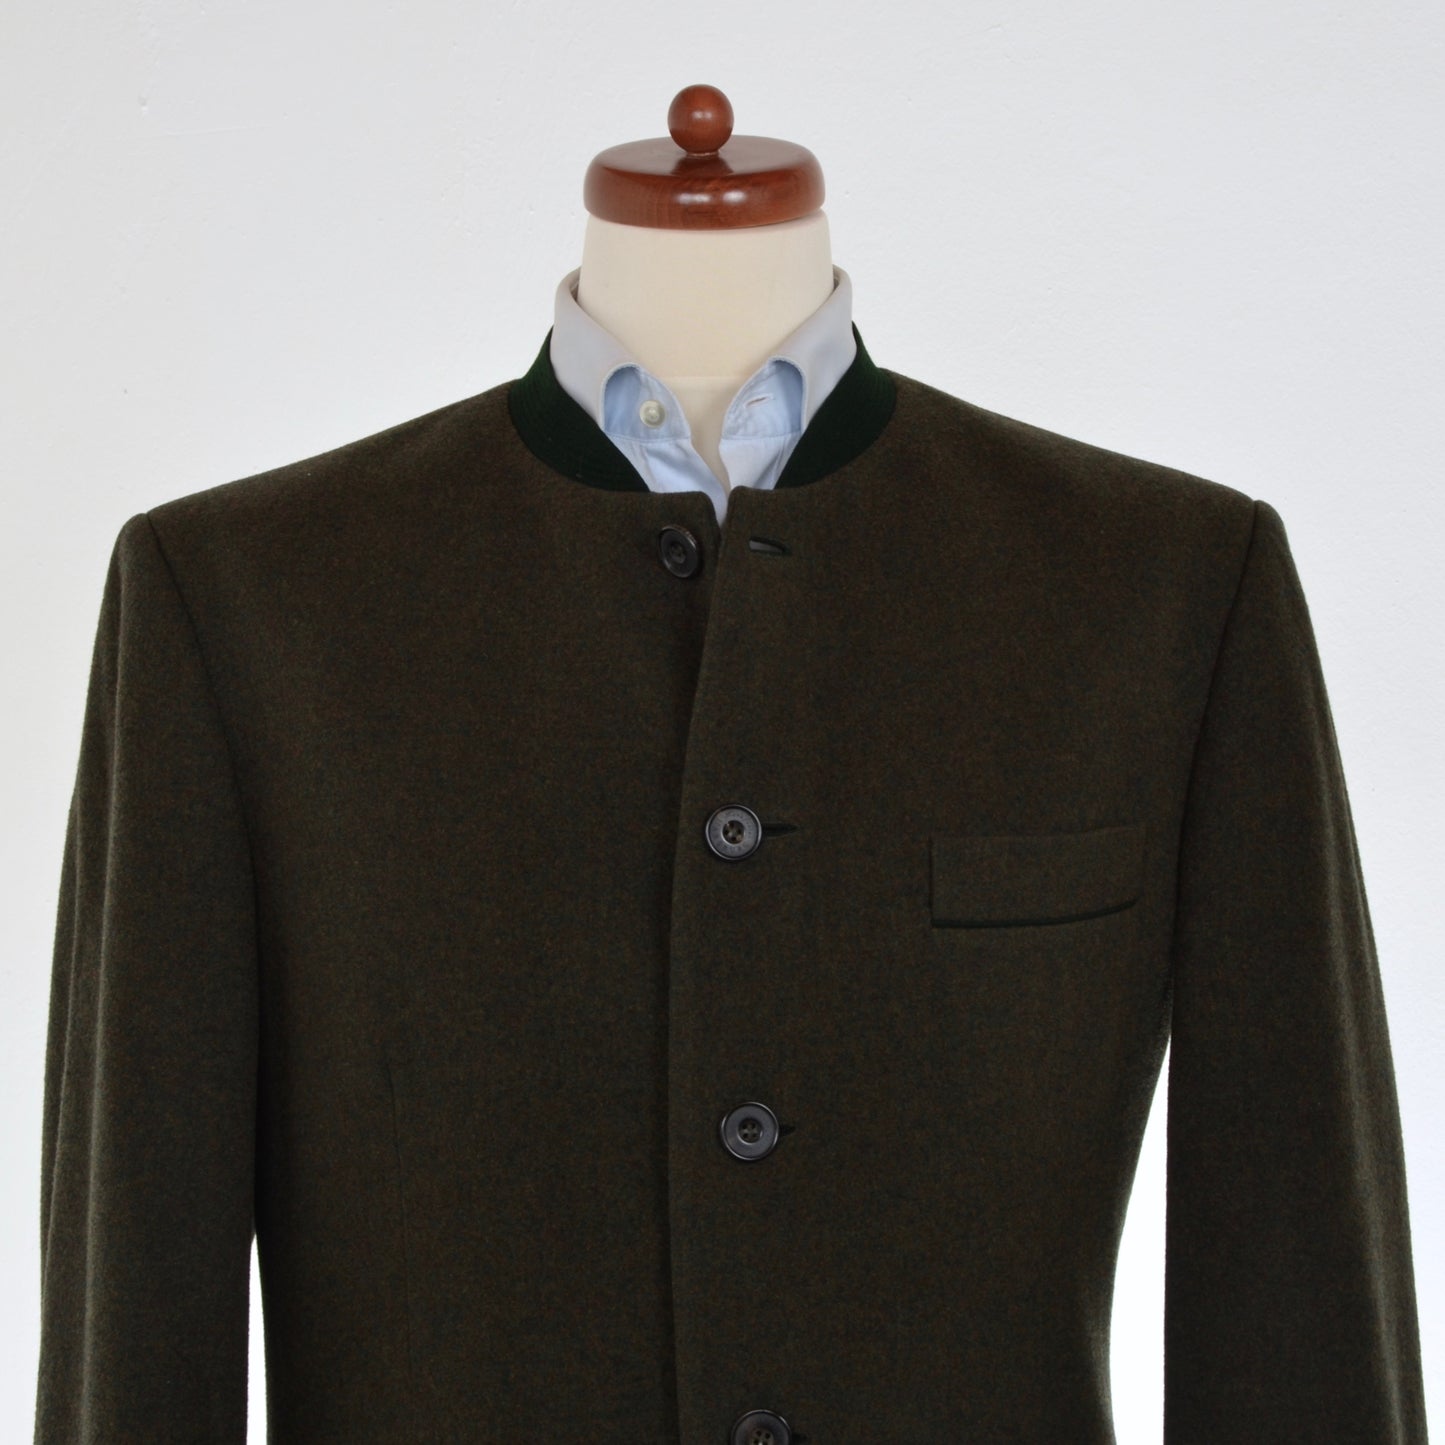 Habsburg Janker/Jacket Size 50 - Green